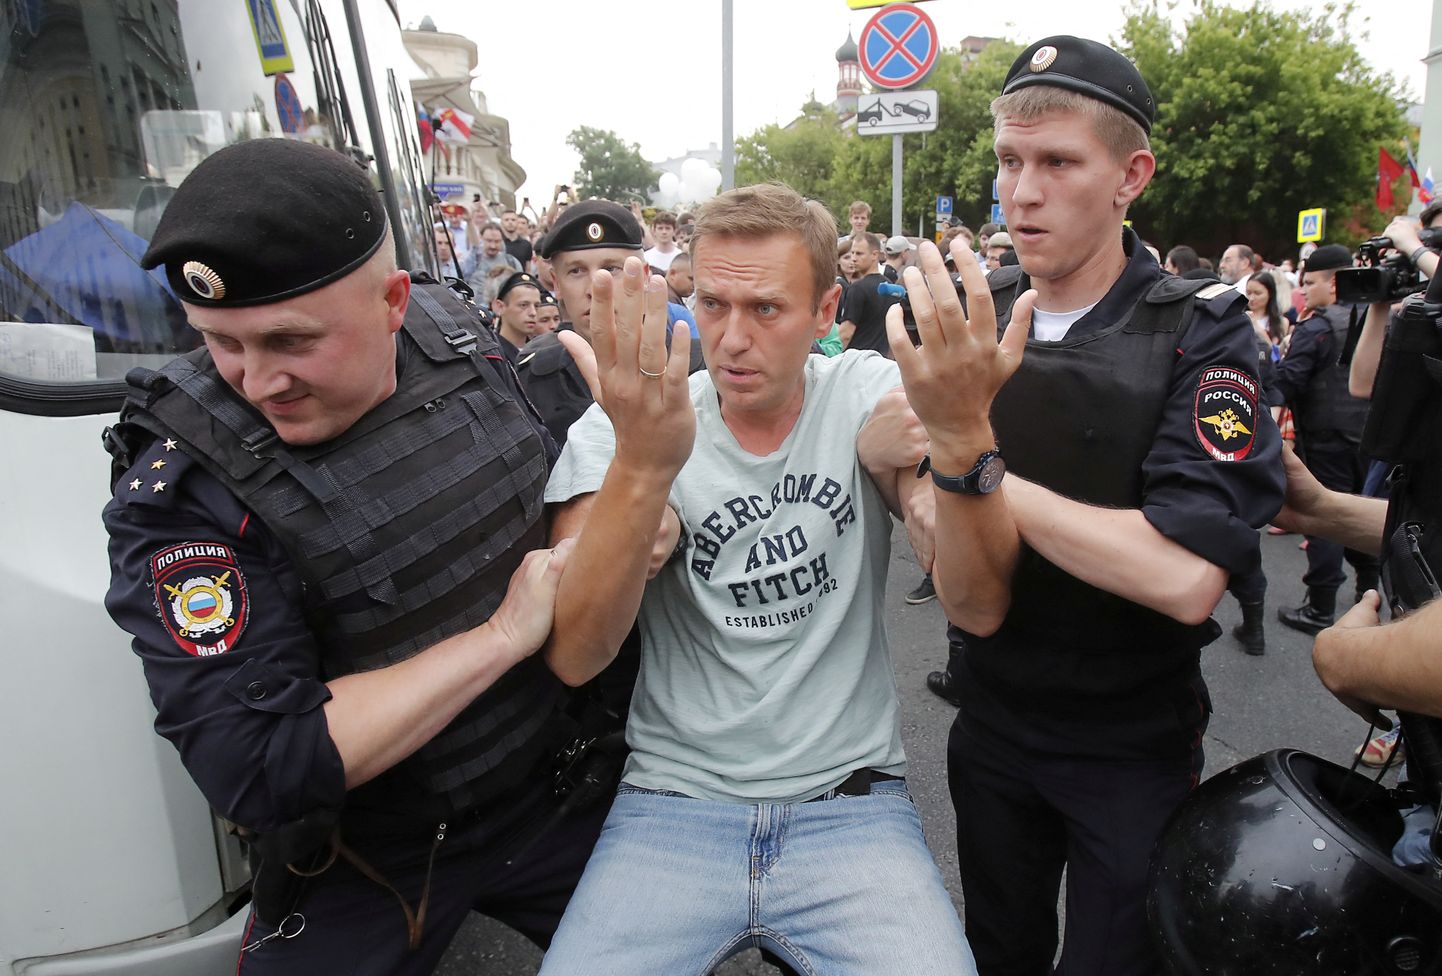 Aleksei Navalnõi korraldas uuriva ajakirjaniku Ivan Golunovi, keda ebaõiglasest süüdistati narkokuriteos, toetuseks 12. juunil 2019 Moskvas protesti, kus ta ka ise politsei poolt kinni võeti